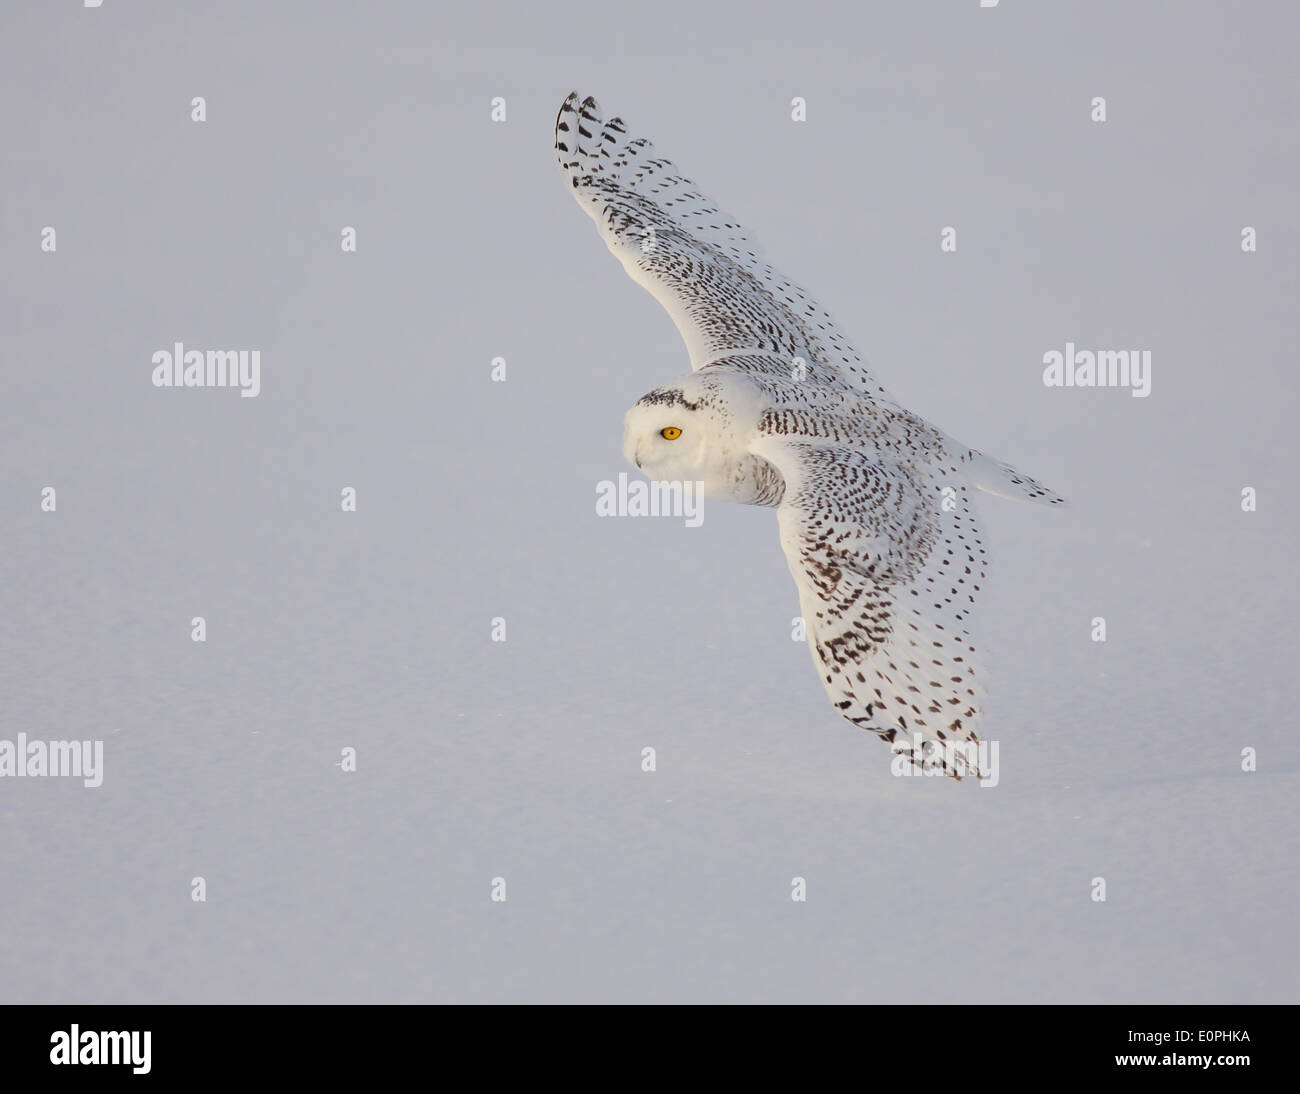 snowy owl flying Stock Photo - Alamy